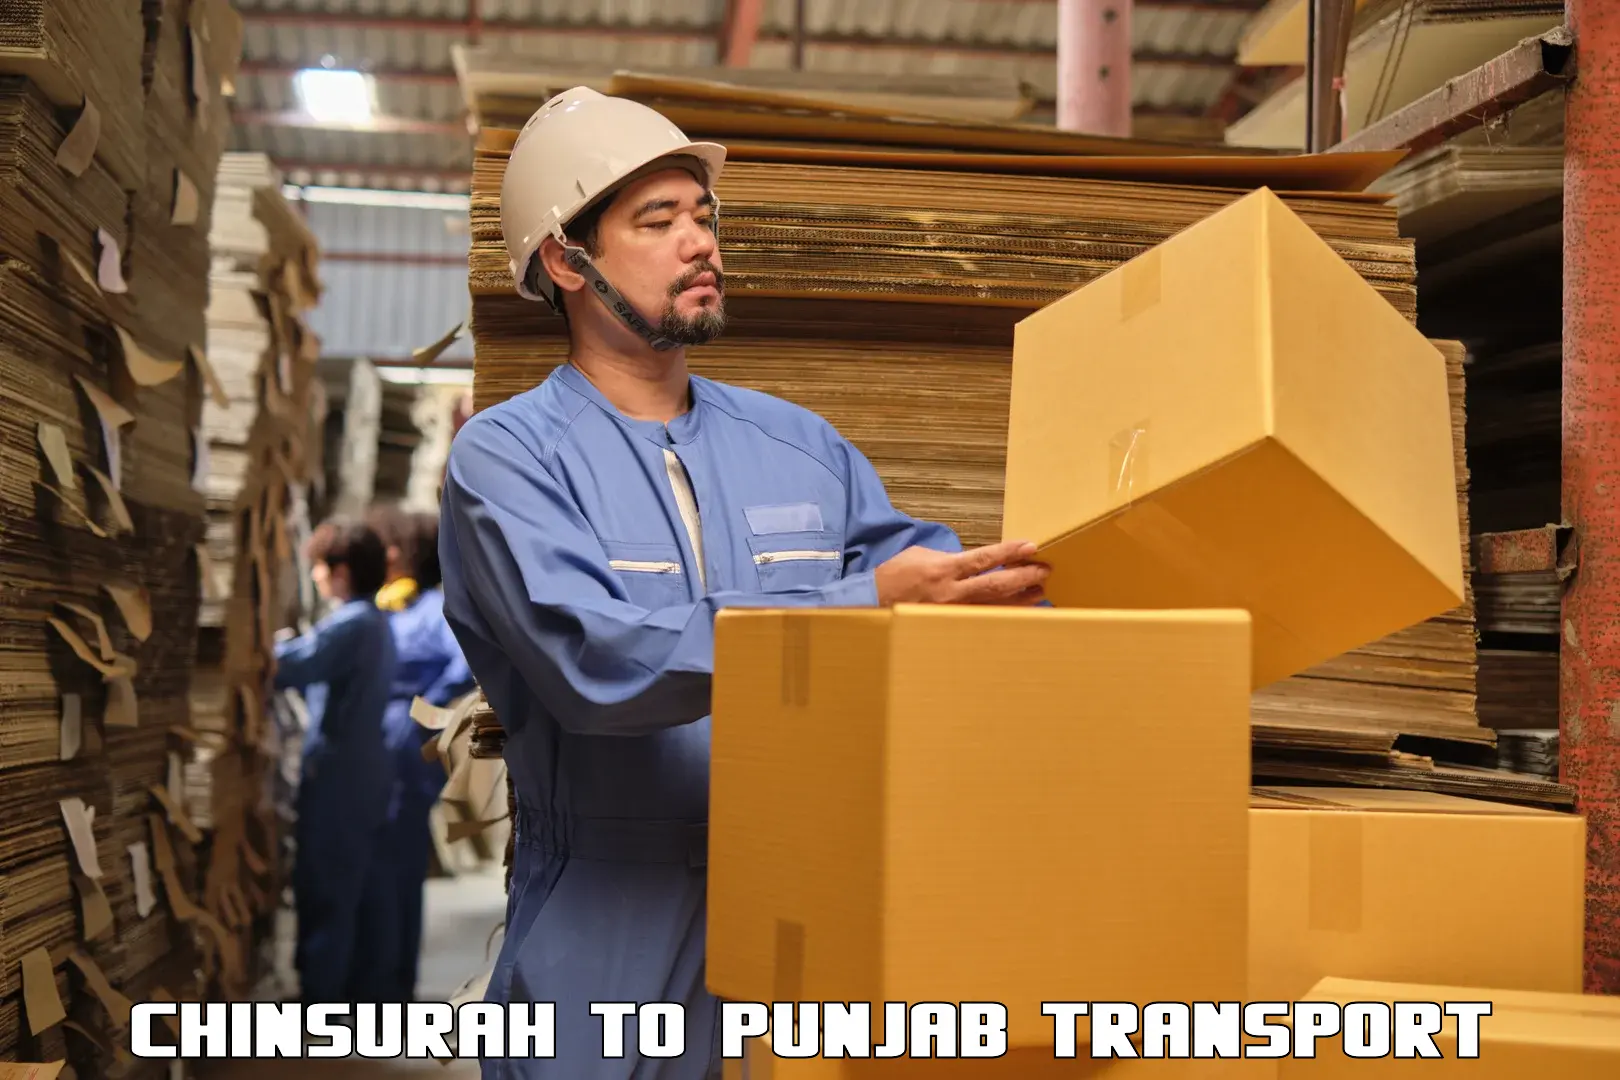 Online transport service Chinsurah to Punjab